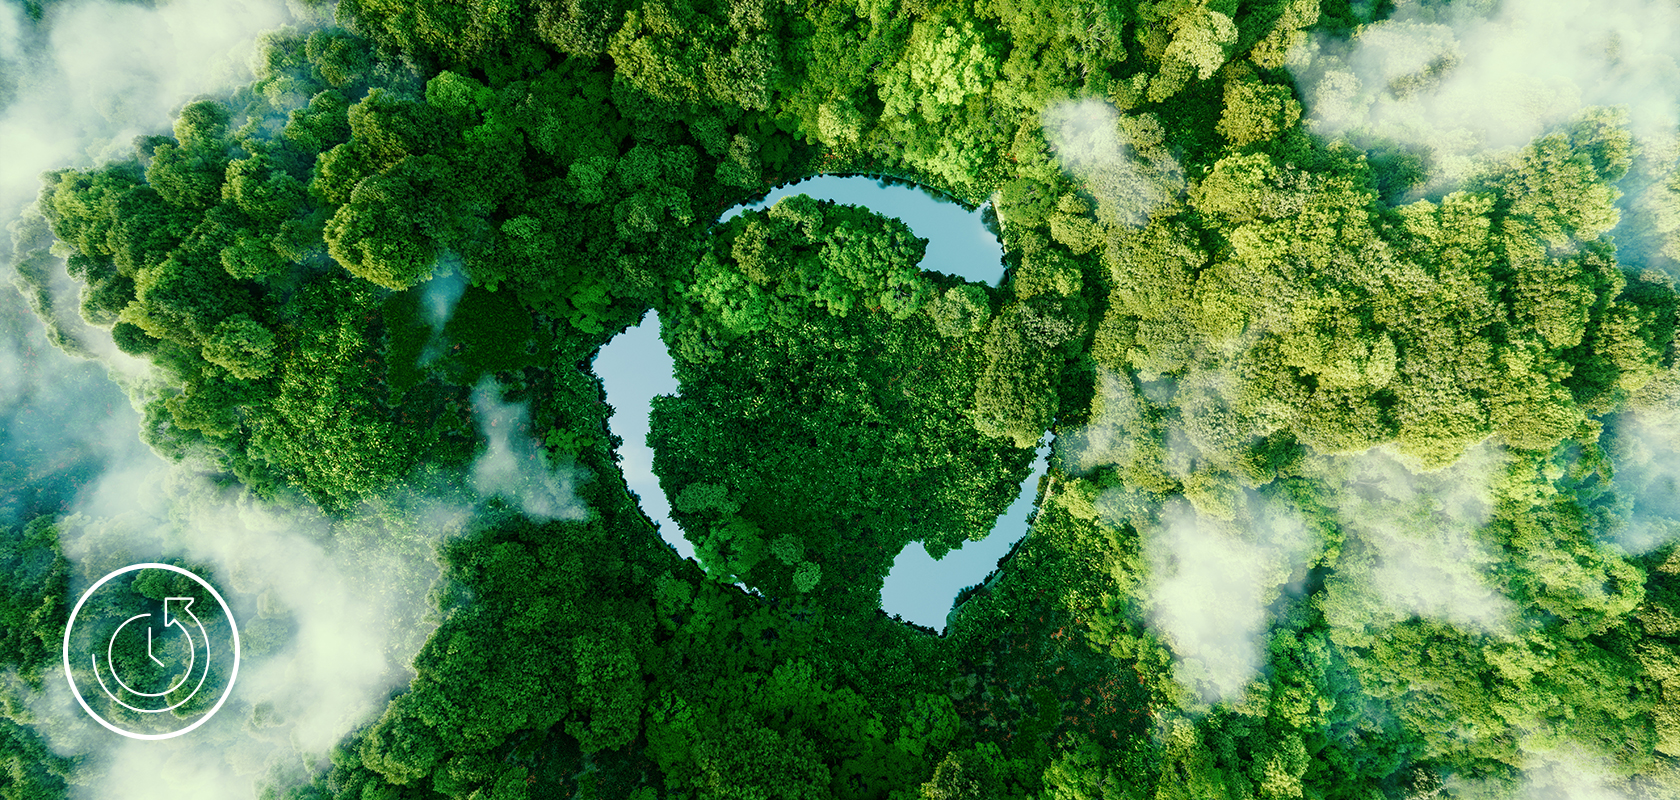 Ein Luftbild eines üppigen Waldes mit einer auffälligen kreisförmigen Lichtung, die eine umweltfreundliche Initiative oder die Kraft der Natur symbolisiert.